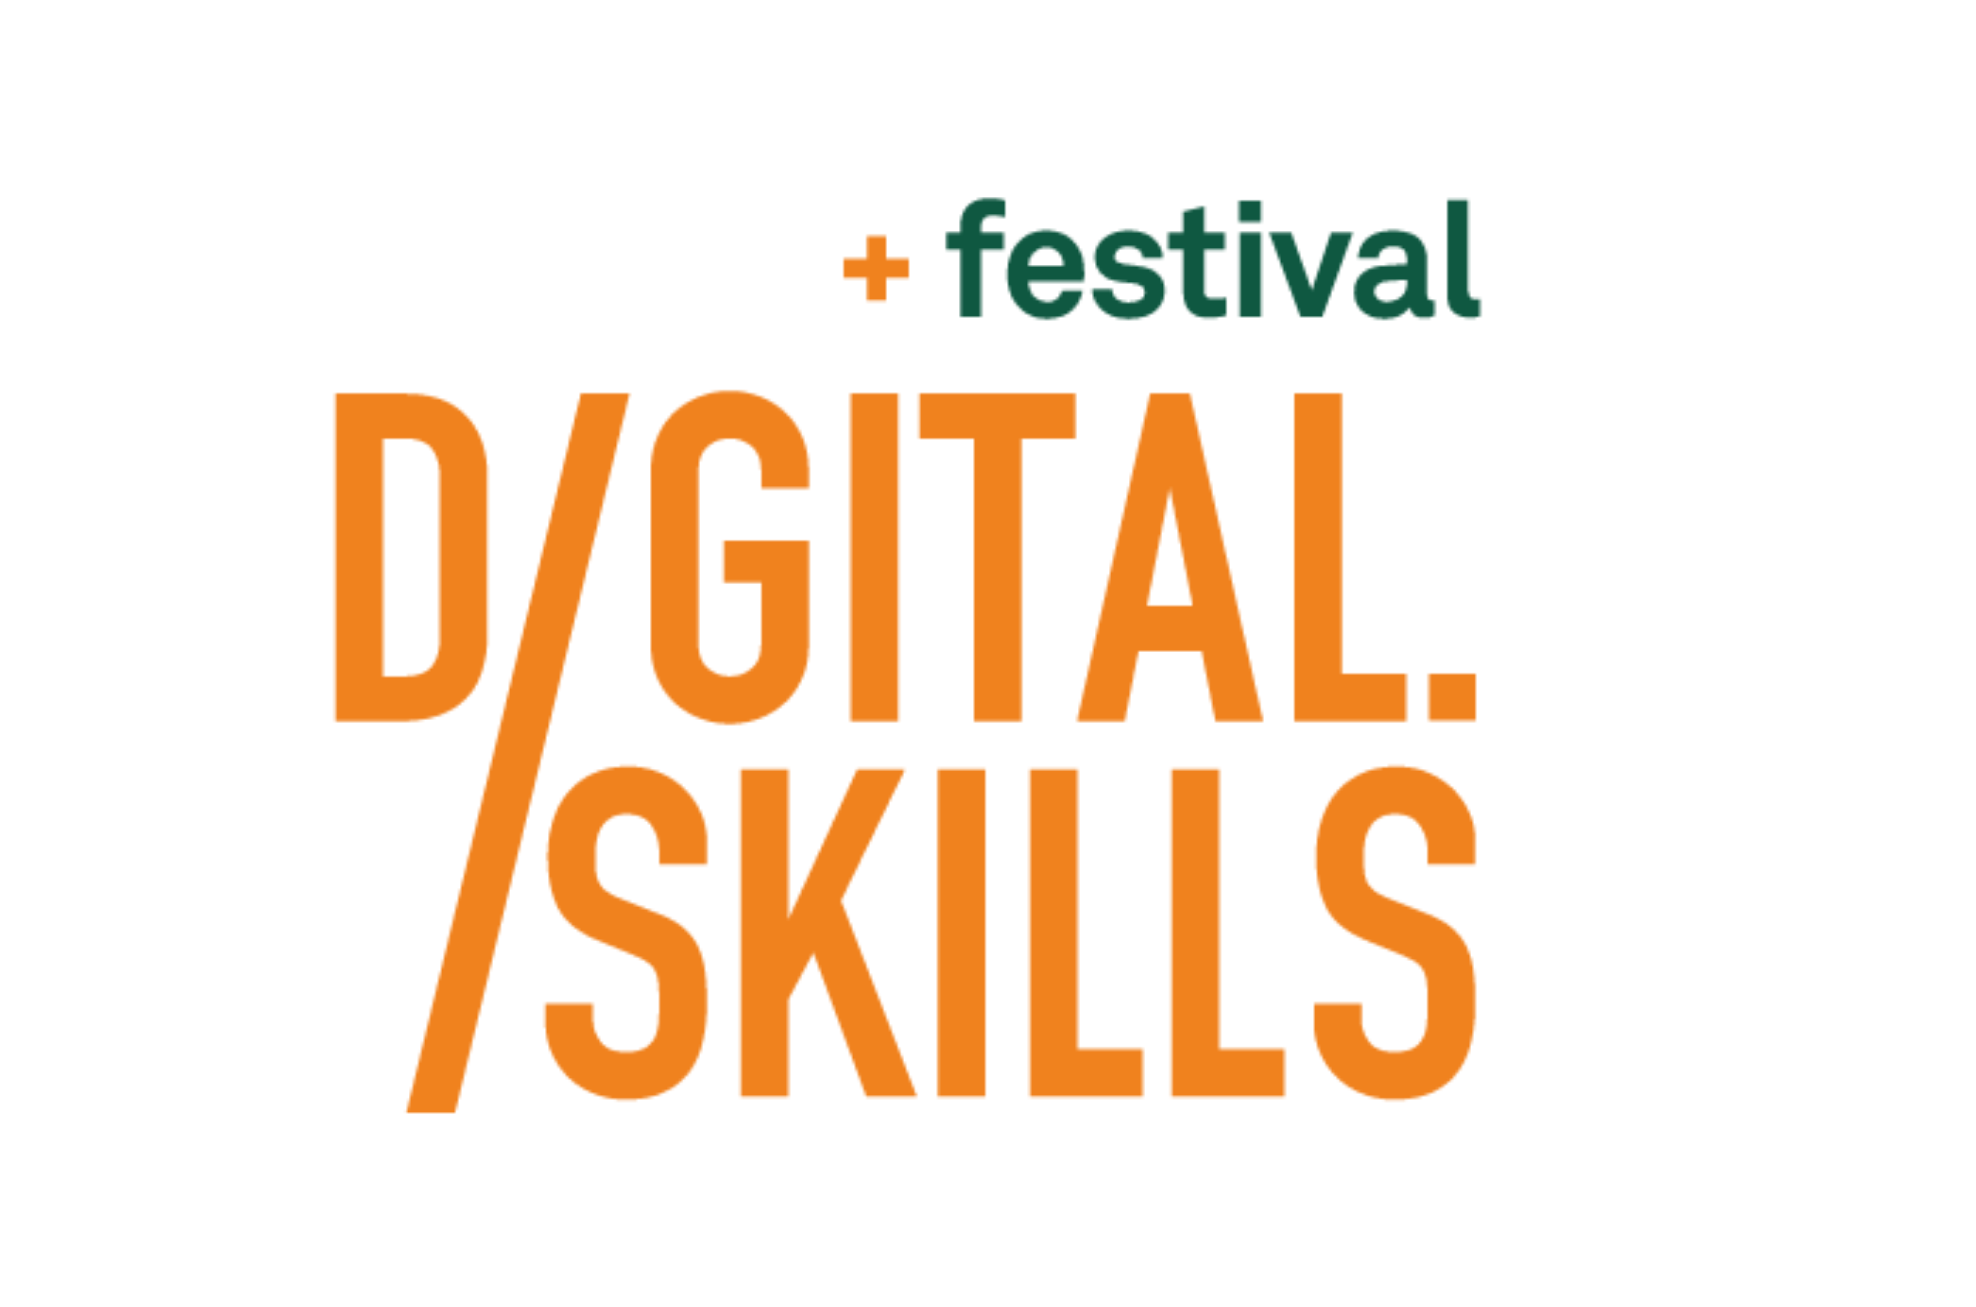 Digital Skills Festival